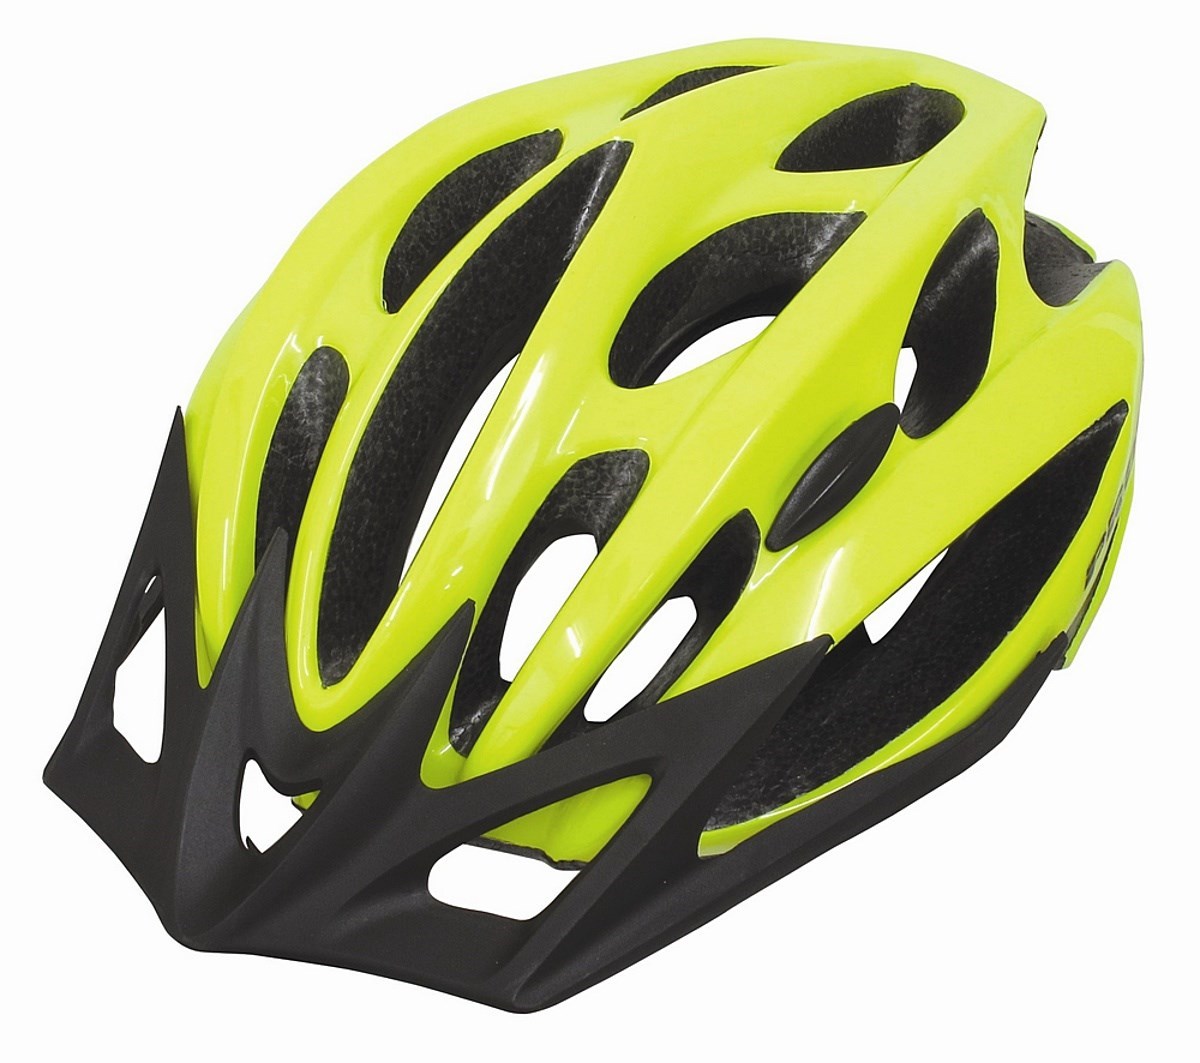 Proviz Mercury LED Cycle Helmet product image